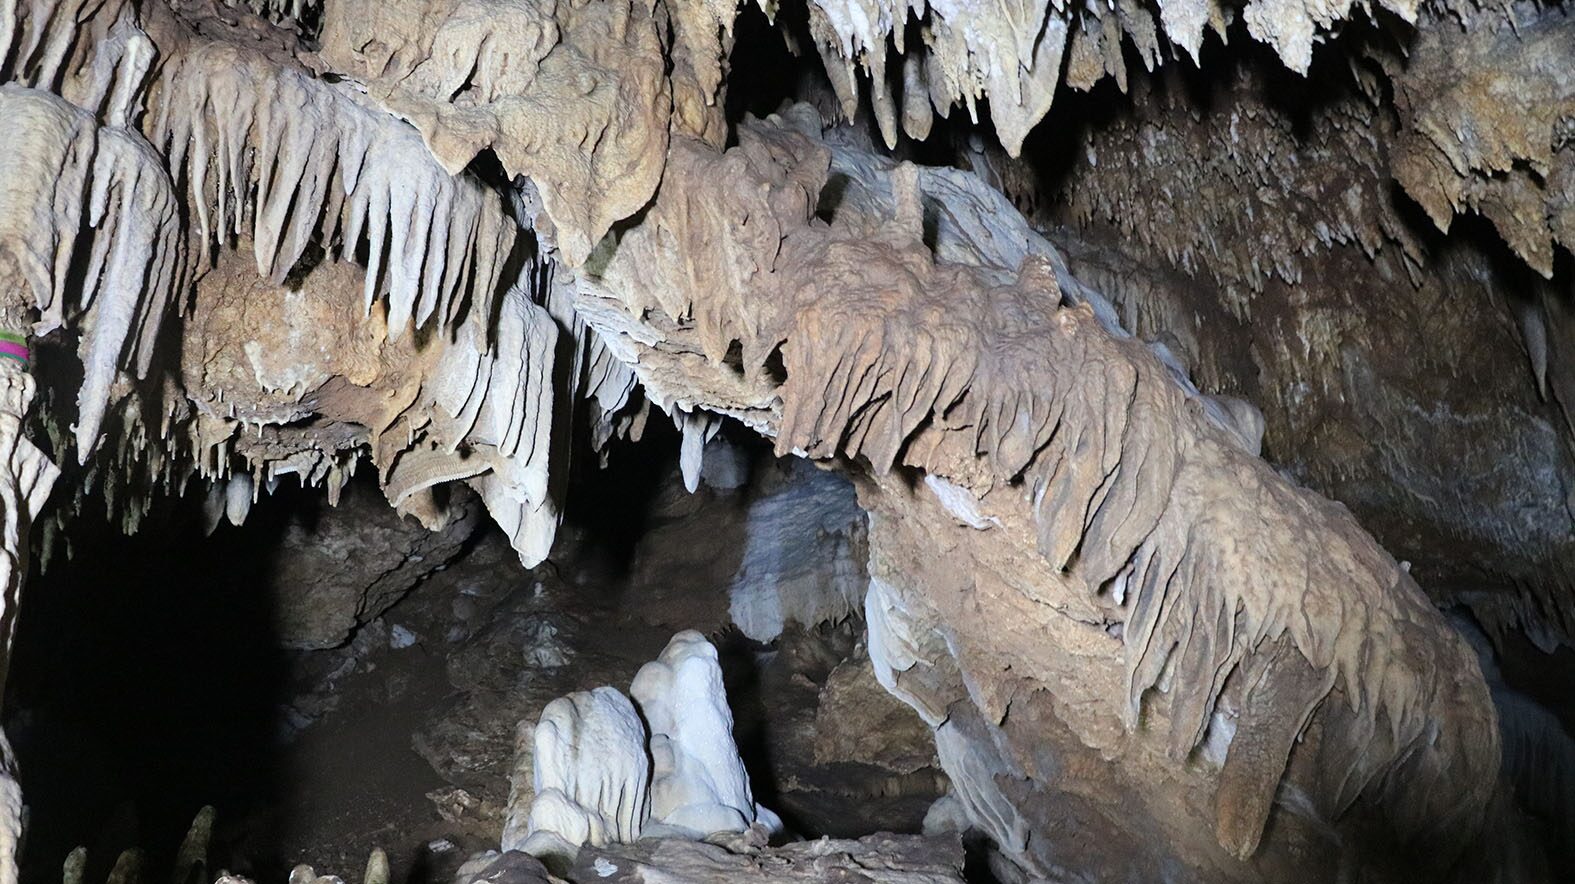 ราชบุรี เจอถ้ำแห่งใหม่ รูเข้านิดเดียว แต่ข้างใน หินงอกหินย้อยงดงามมาก